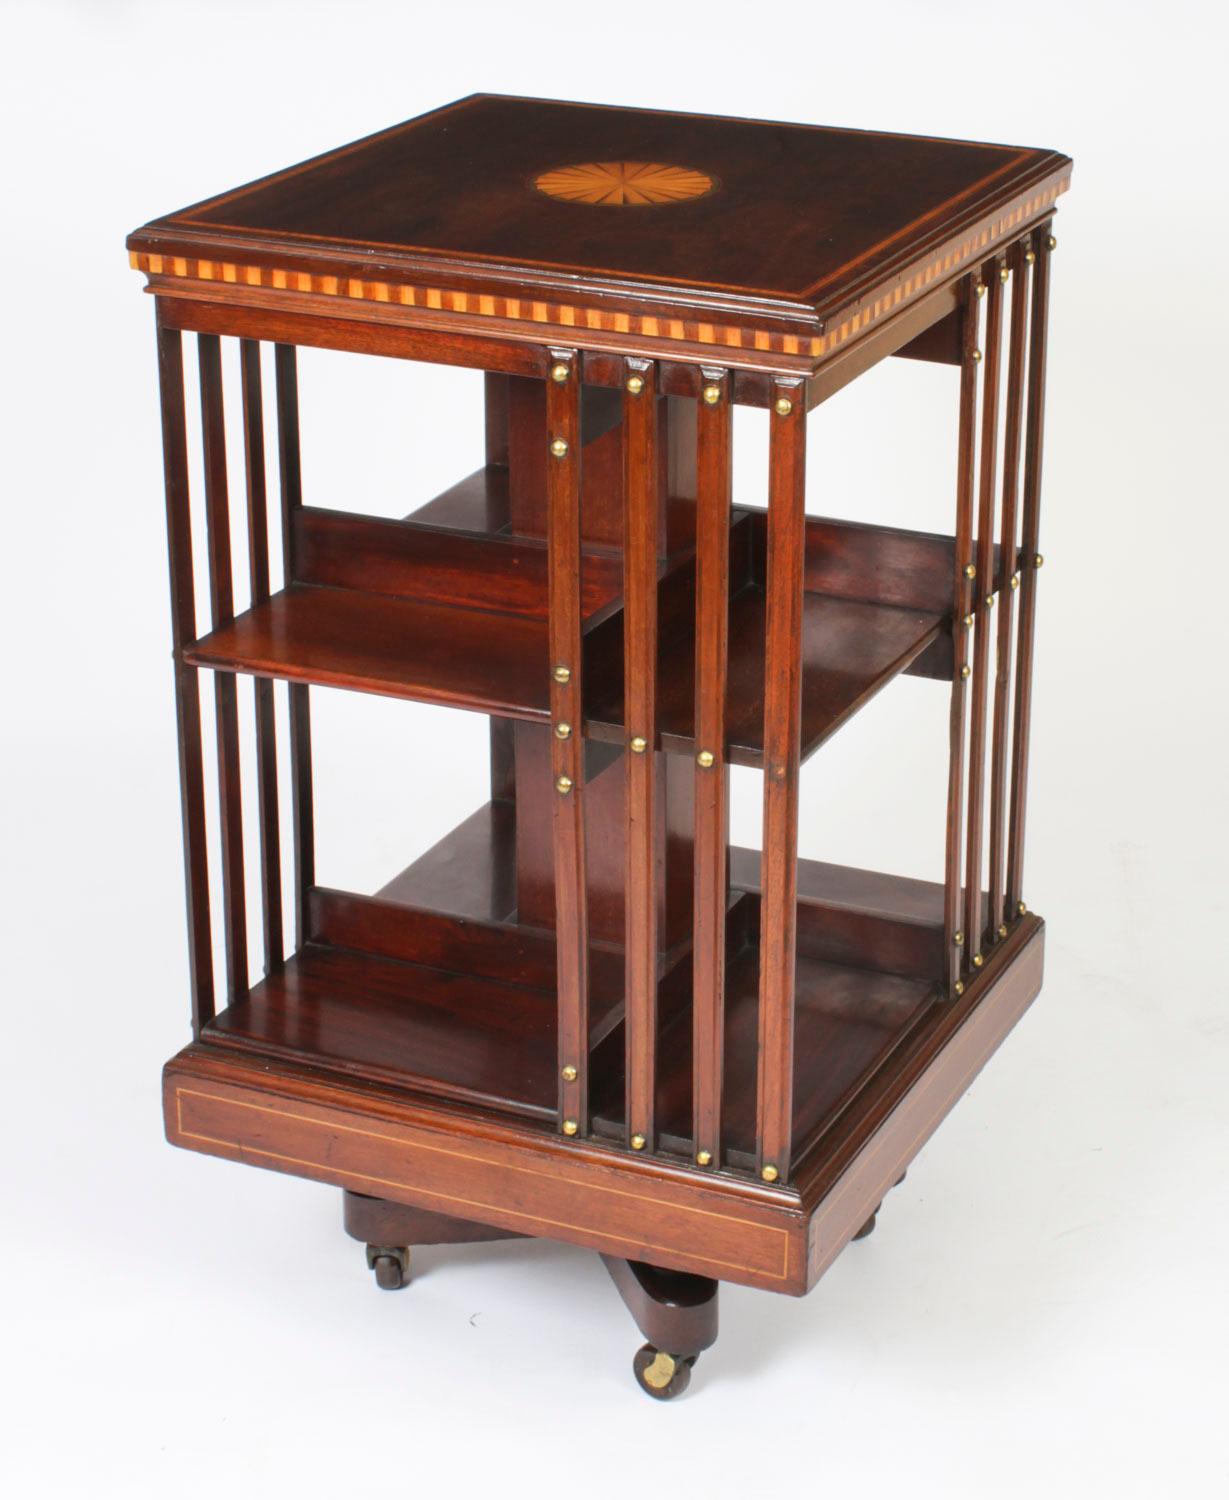 Dieses exquisite antike drehbare Bücherregal  dem bekannten viktorianischen Einzelhändler und Hersteller Maple & Co. zugeschrieben, um 1900.

Er ist aus Mahagoniholz gefertigt, dreht sich auf einem massiven Gusseisensockel und hat oben und unten